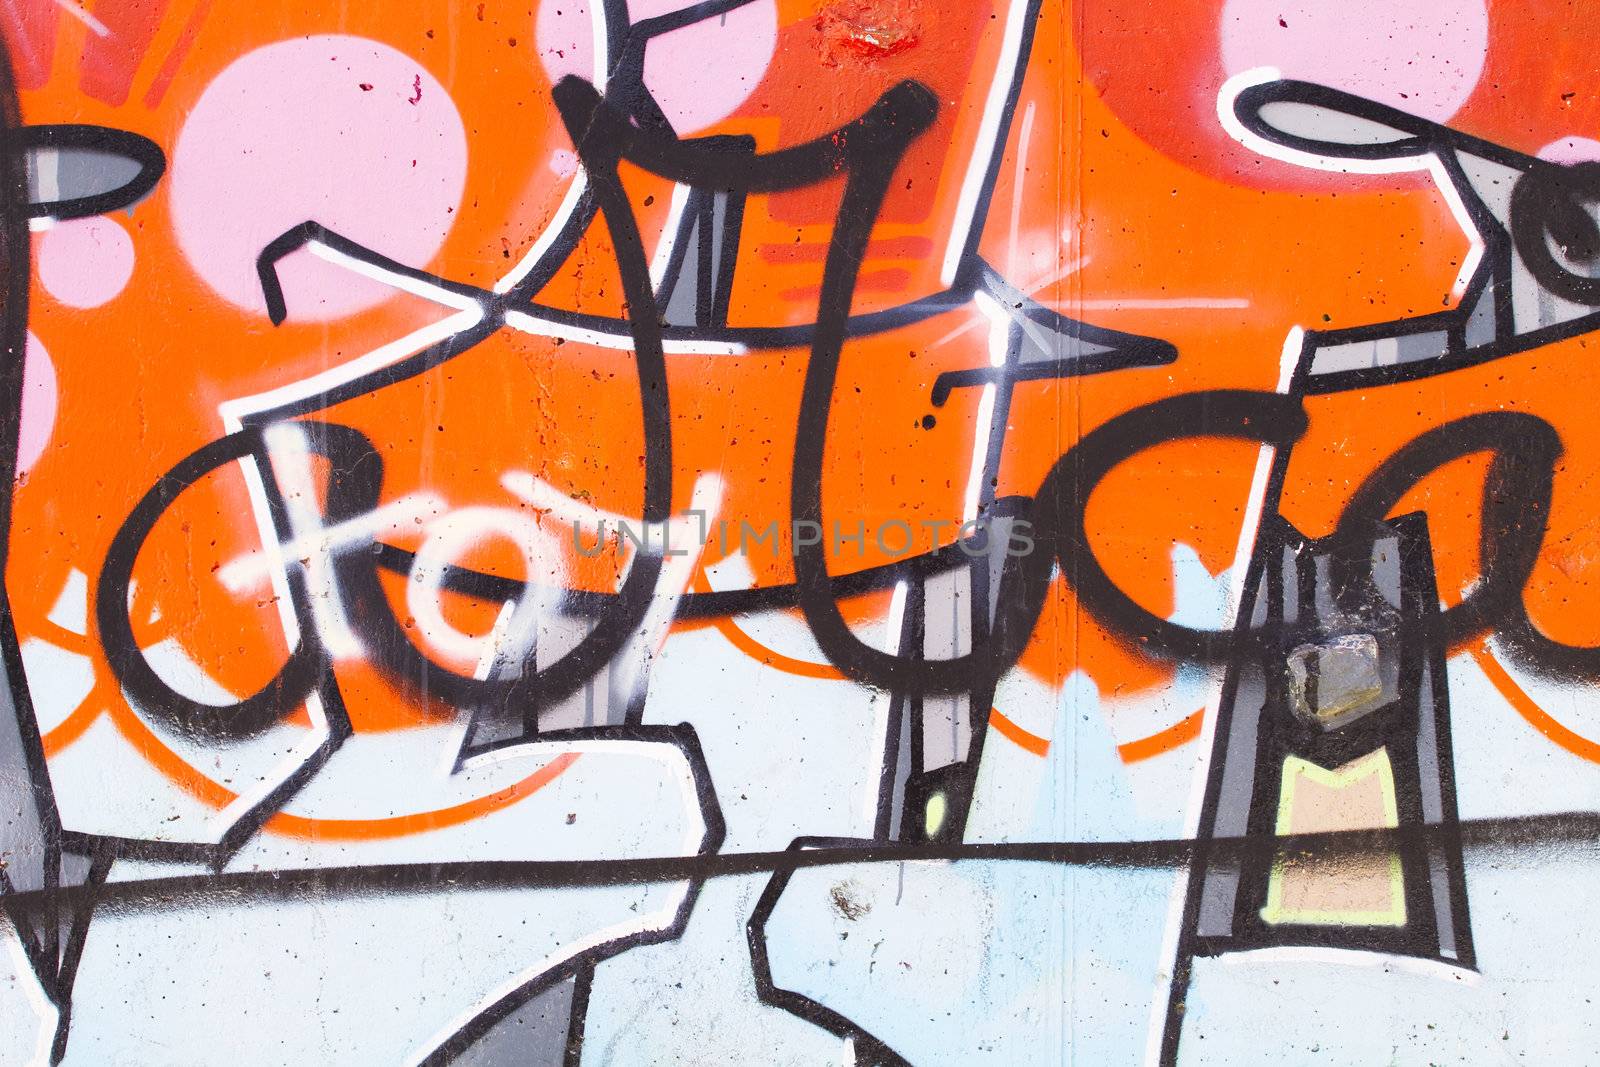 Street art, segment of an urban grafitti on wall by FernandoCortes